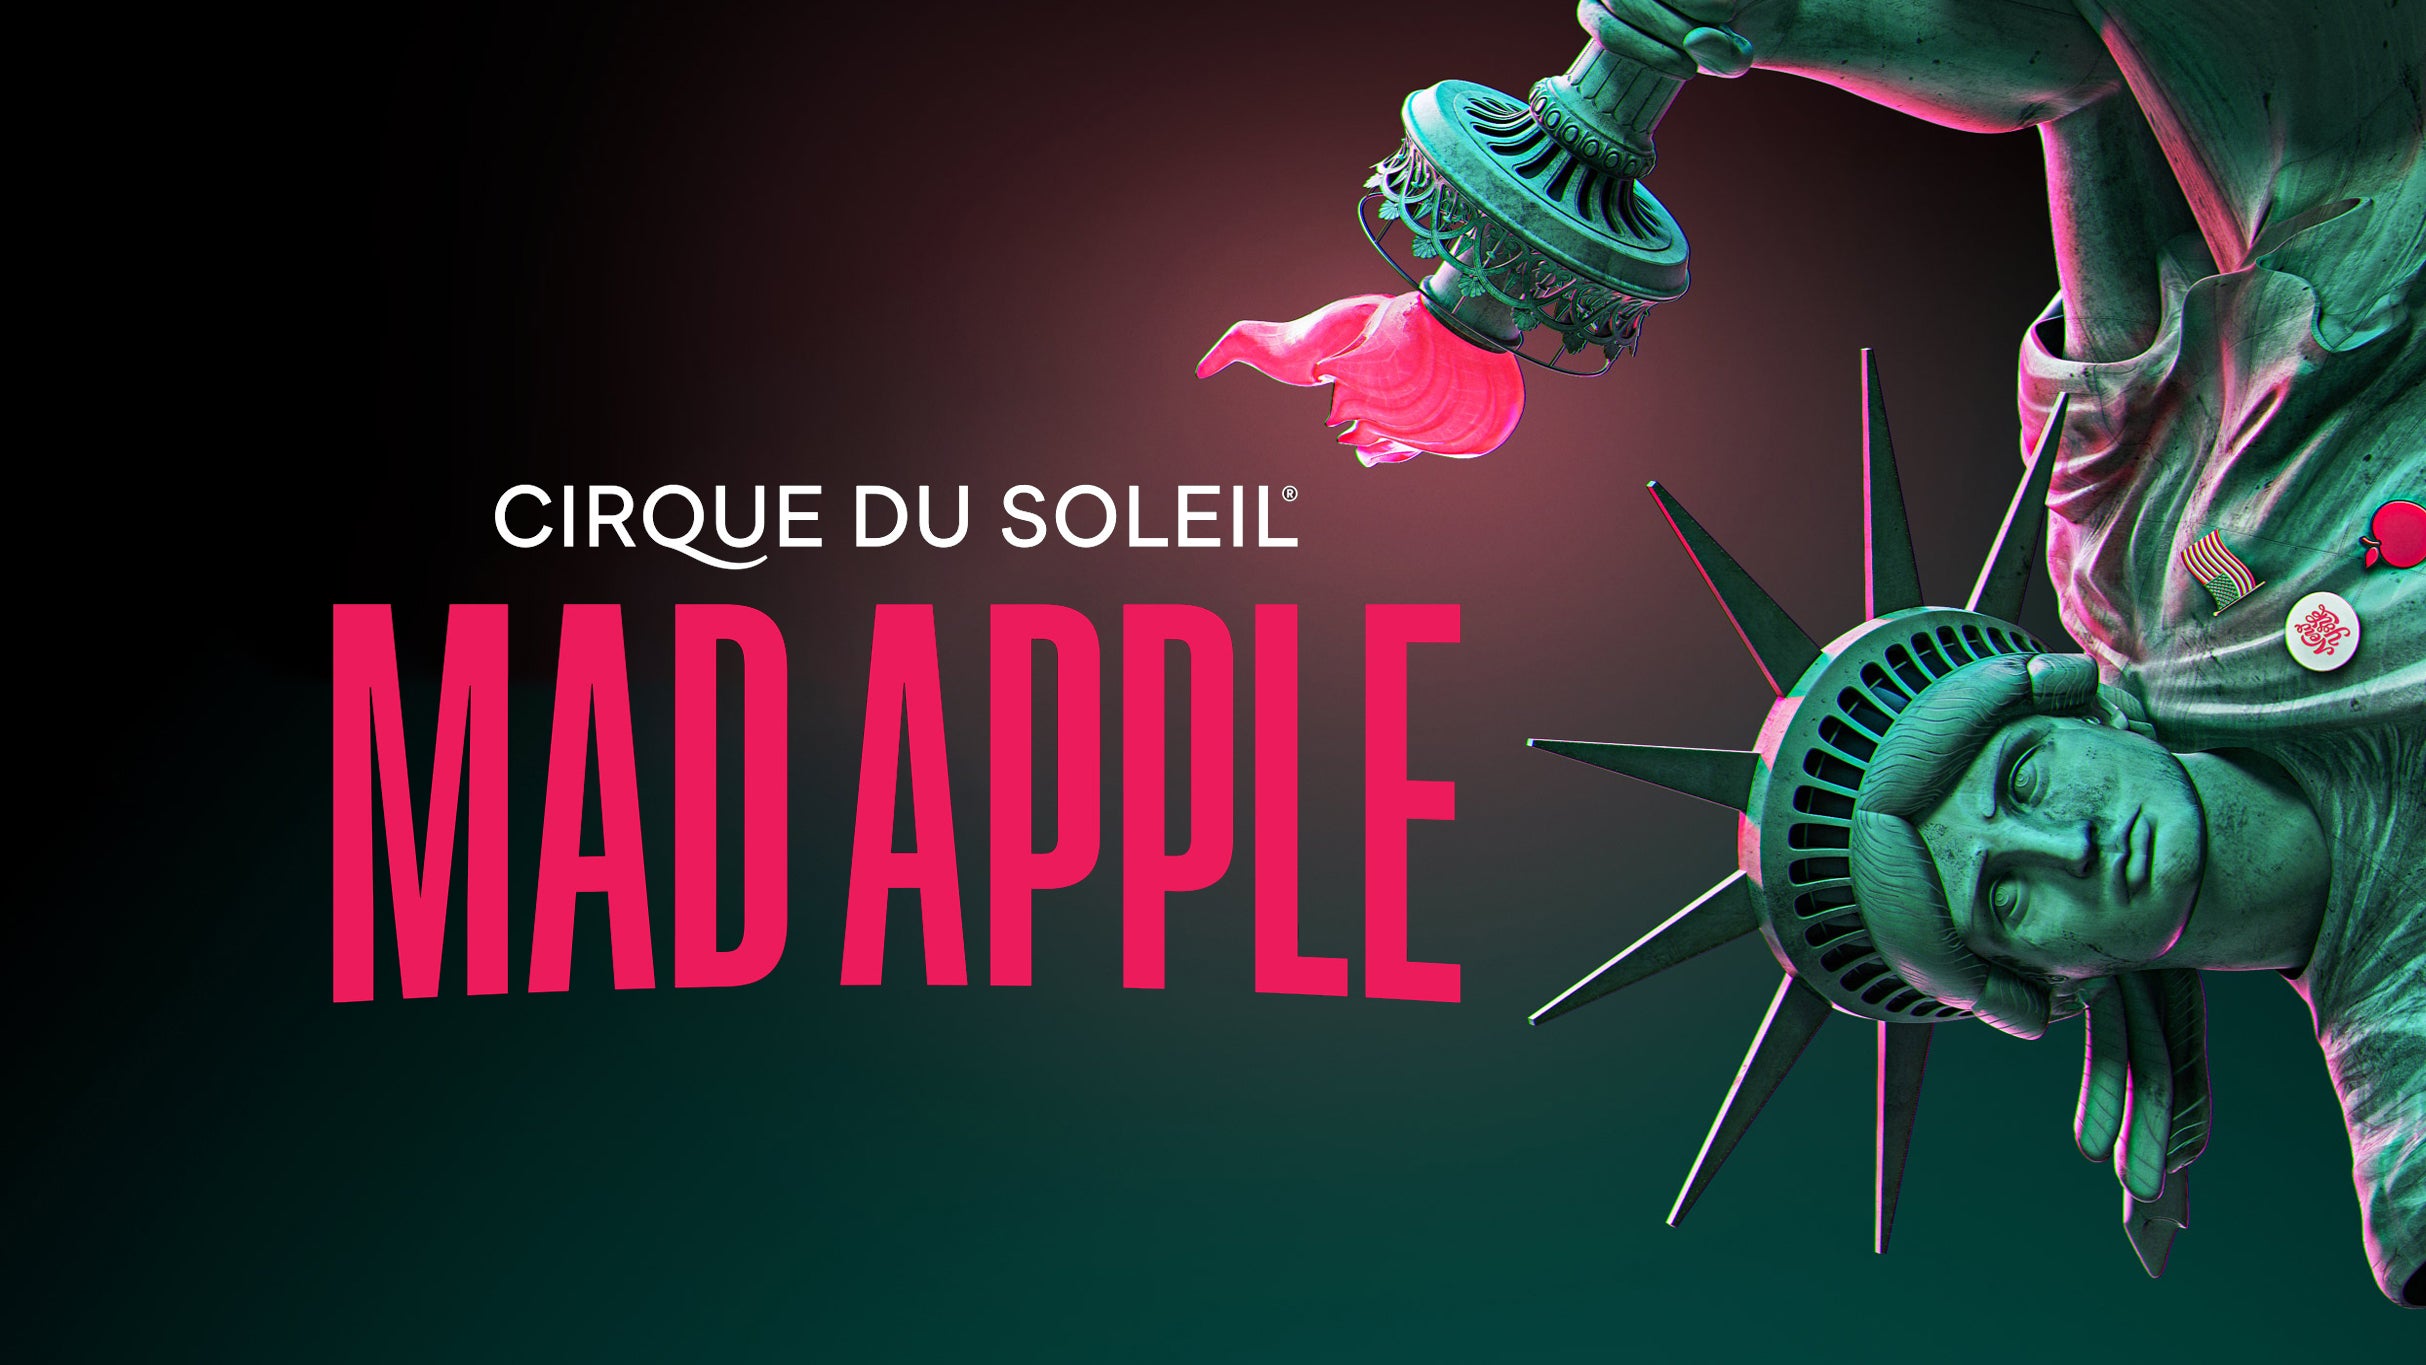 Cirque du Soleil Mad Apple Las Vegas Tickets, Presale Passwords